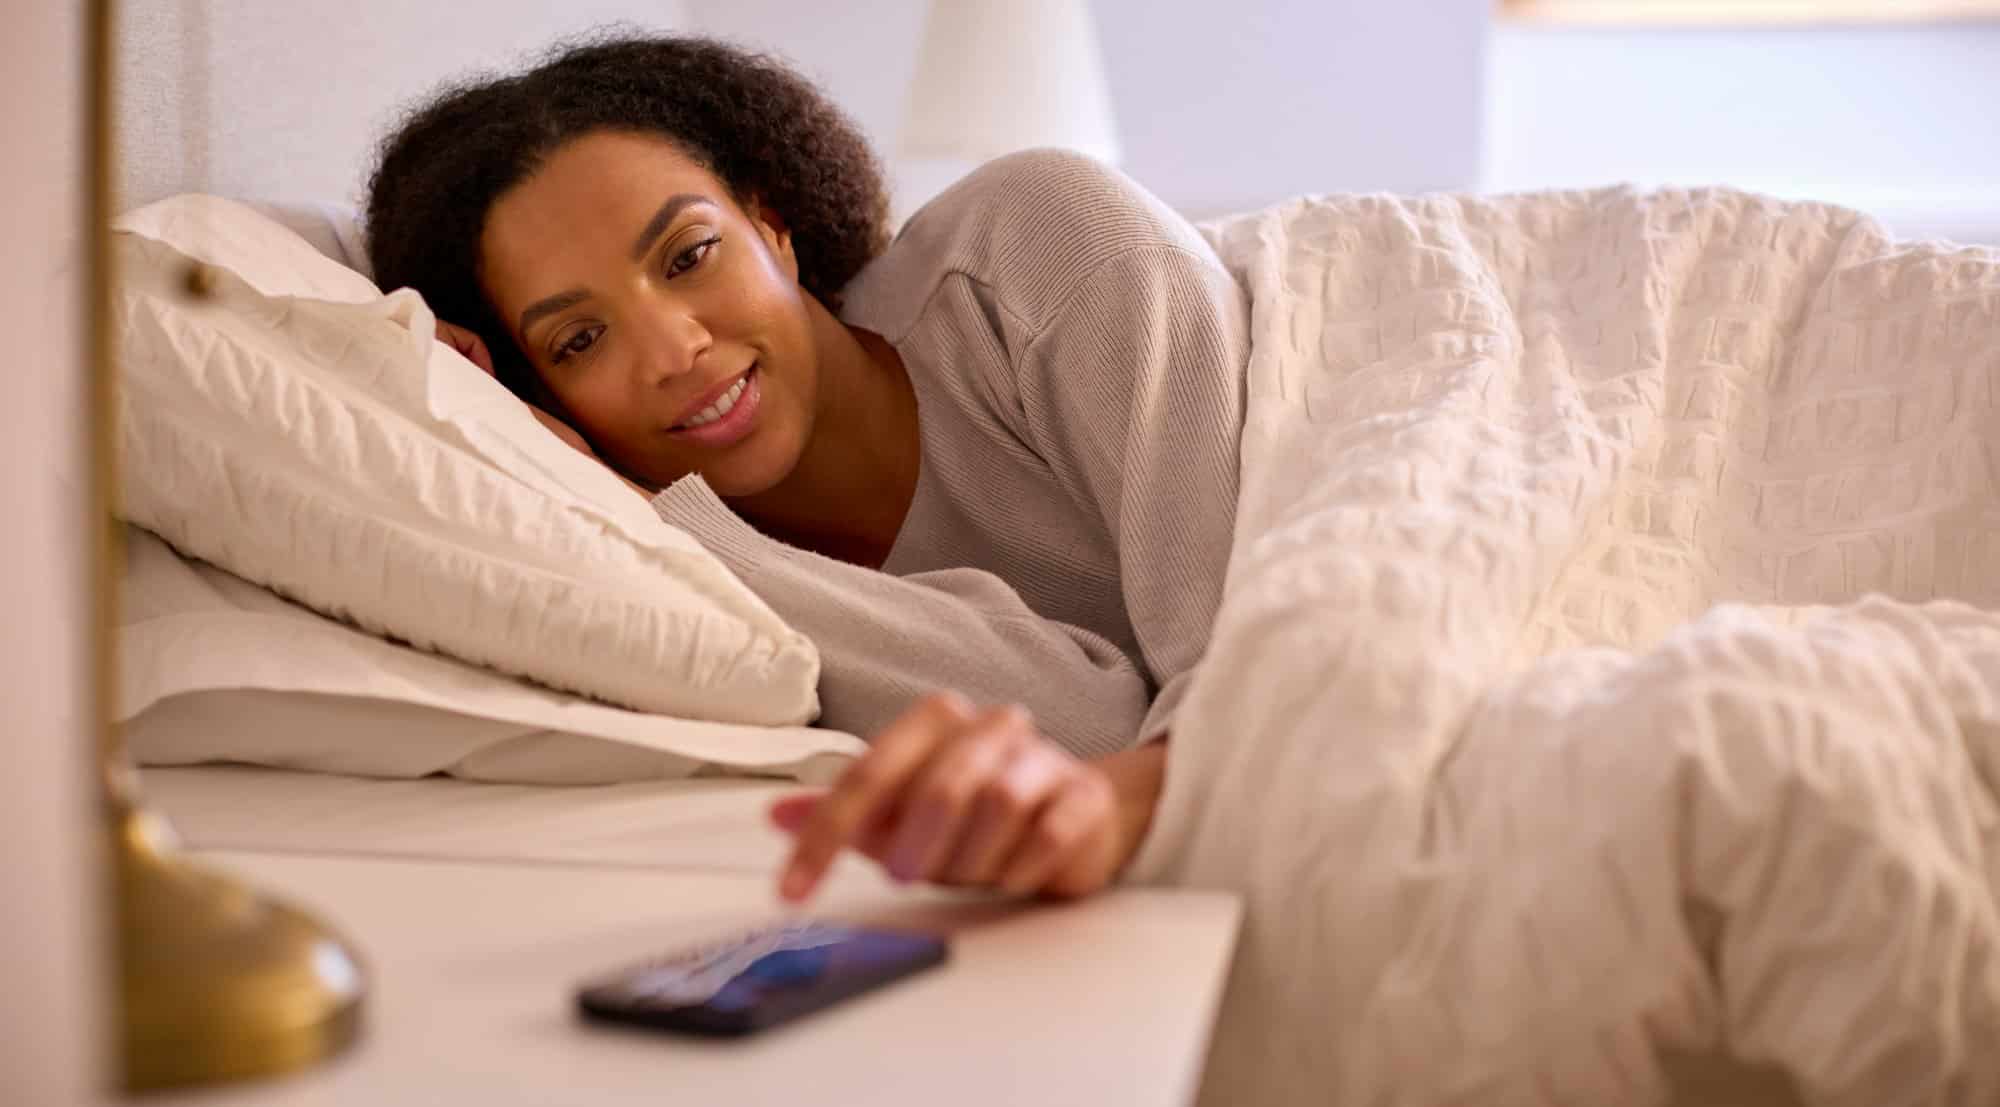 Comment configurer une alarme intelligente pour qu’elle s’adapte à votre cycle de sommeil ?